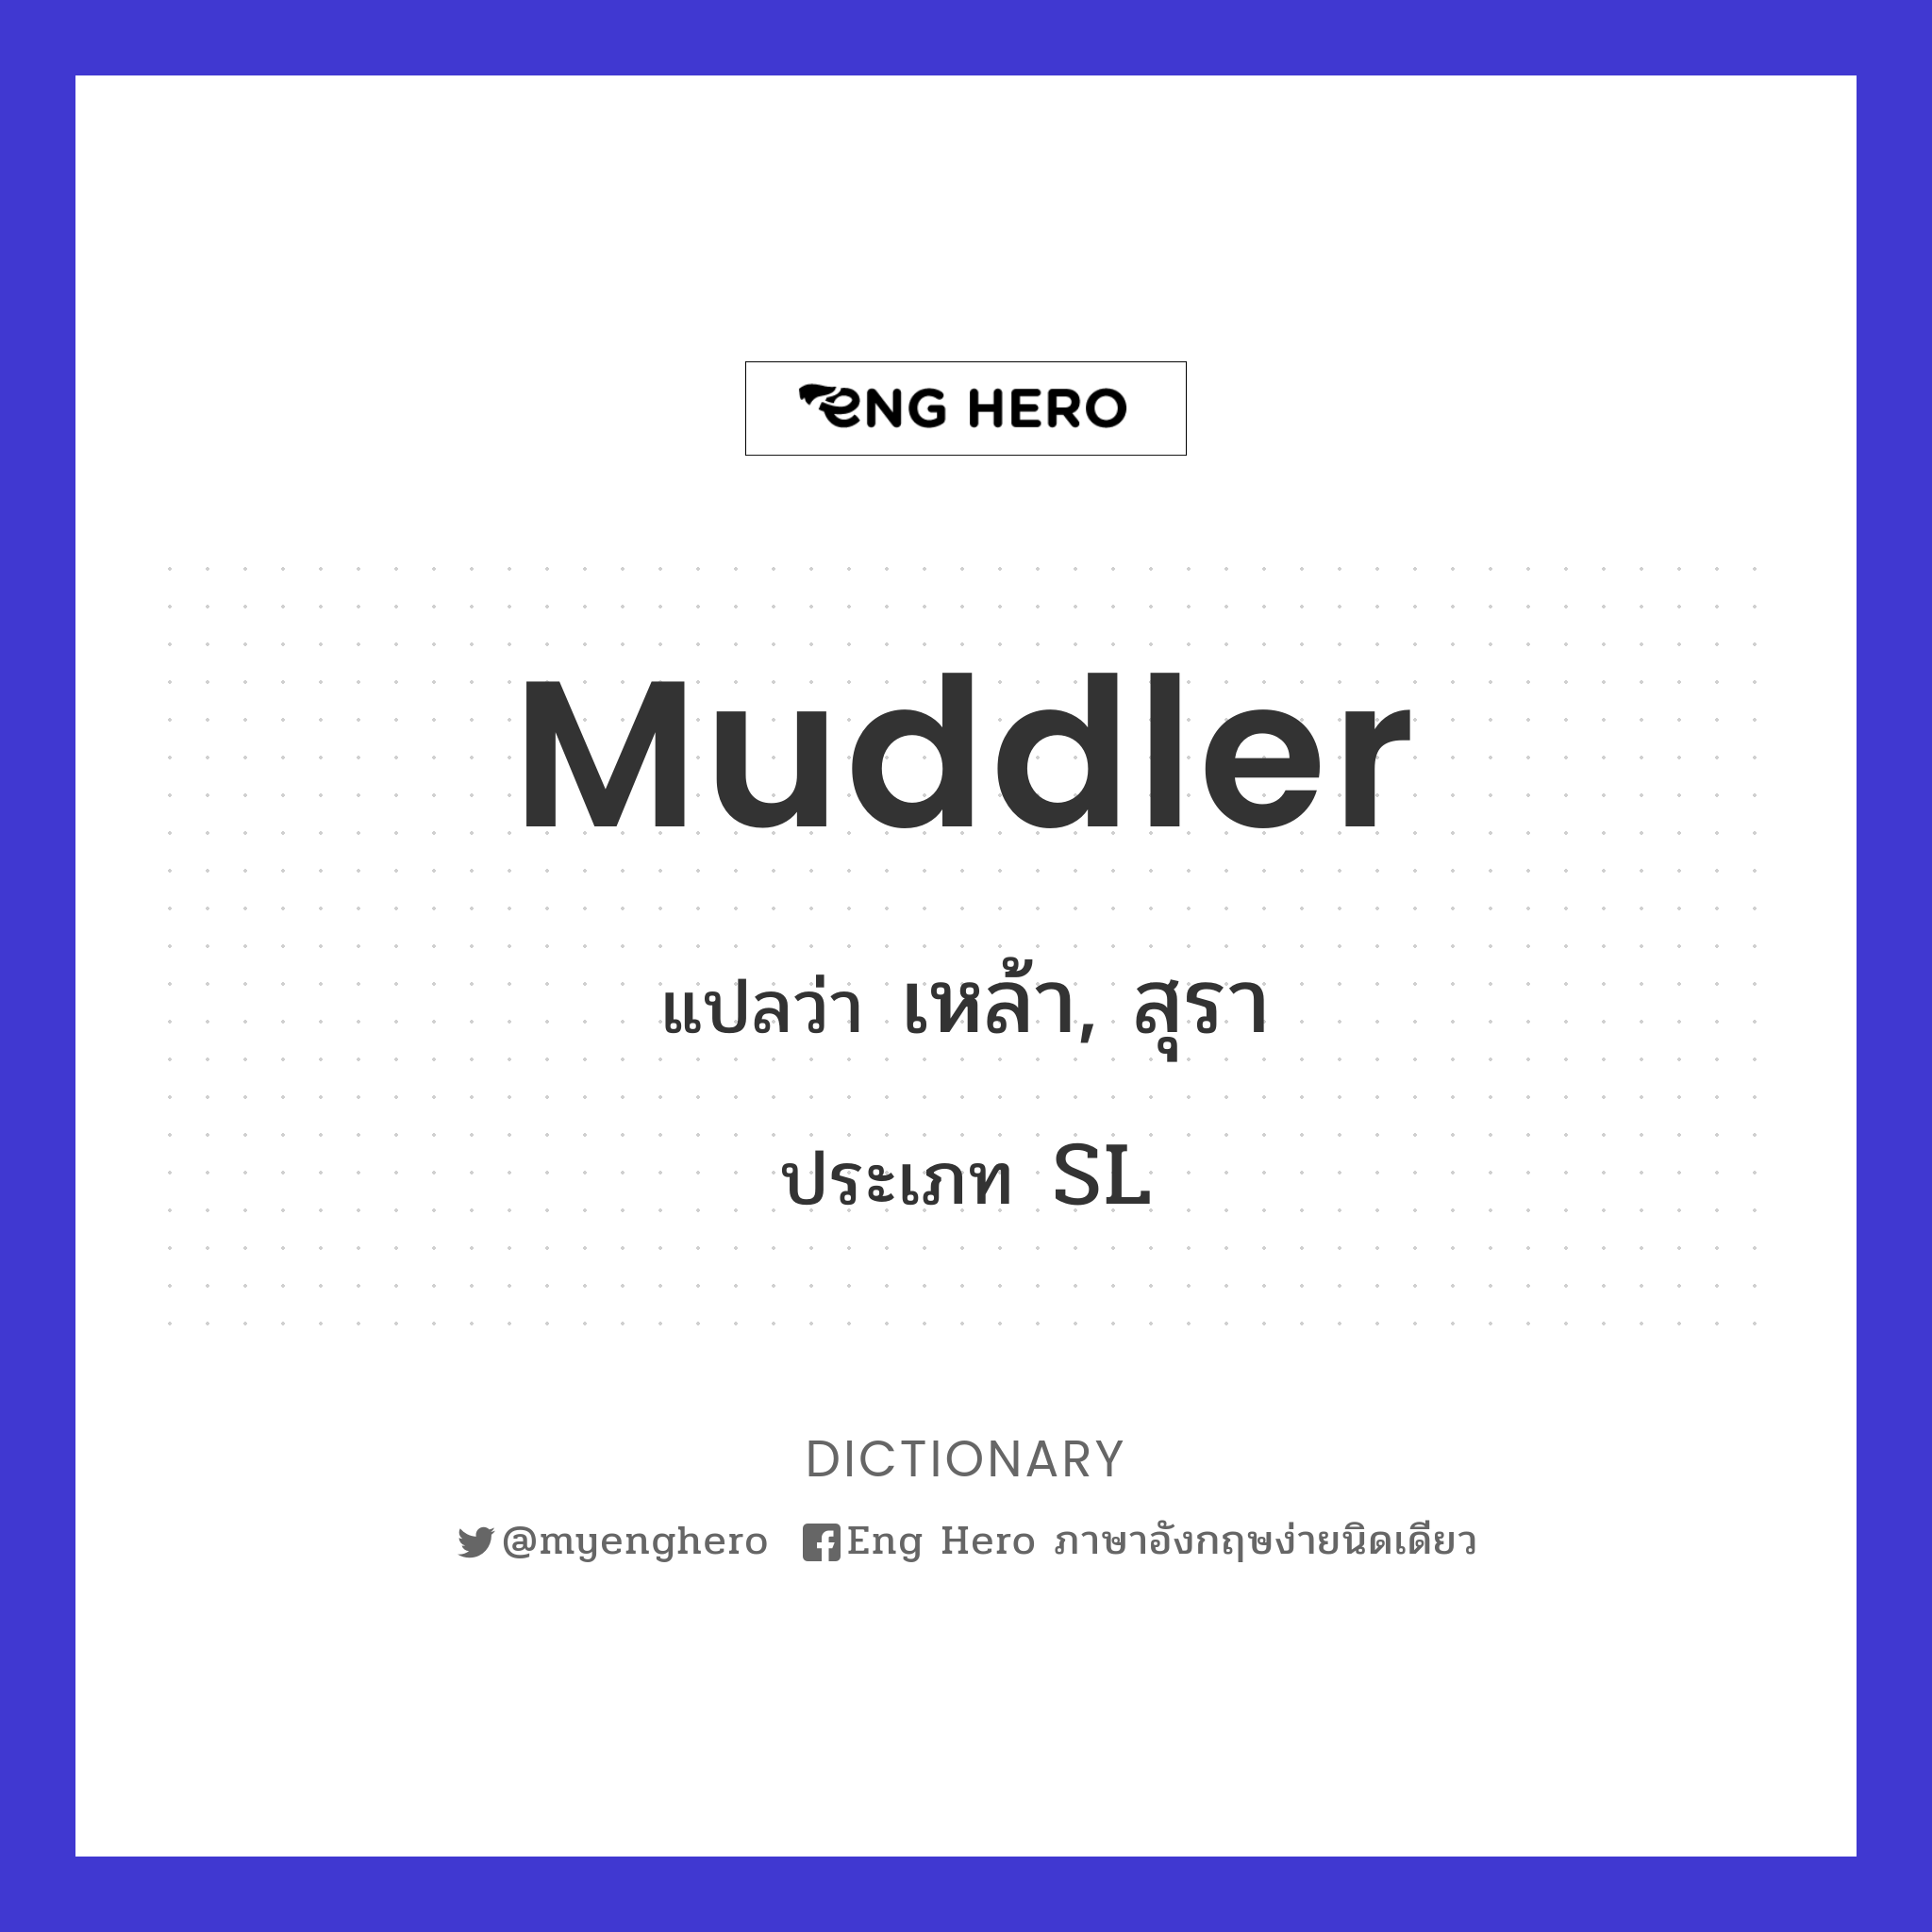 muddler